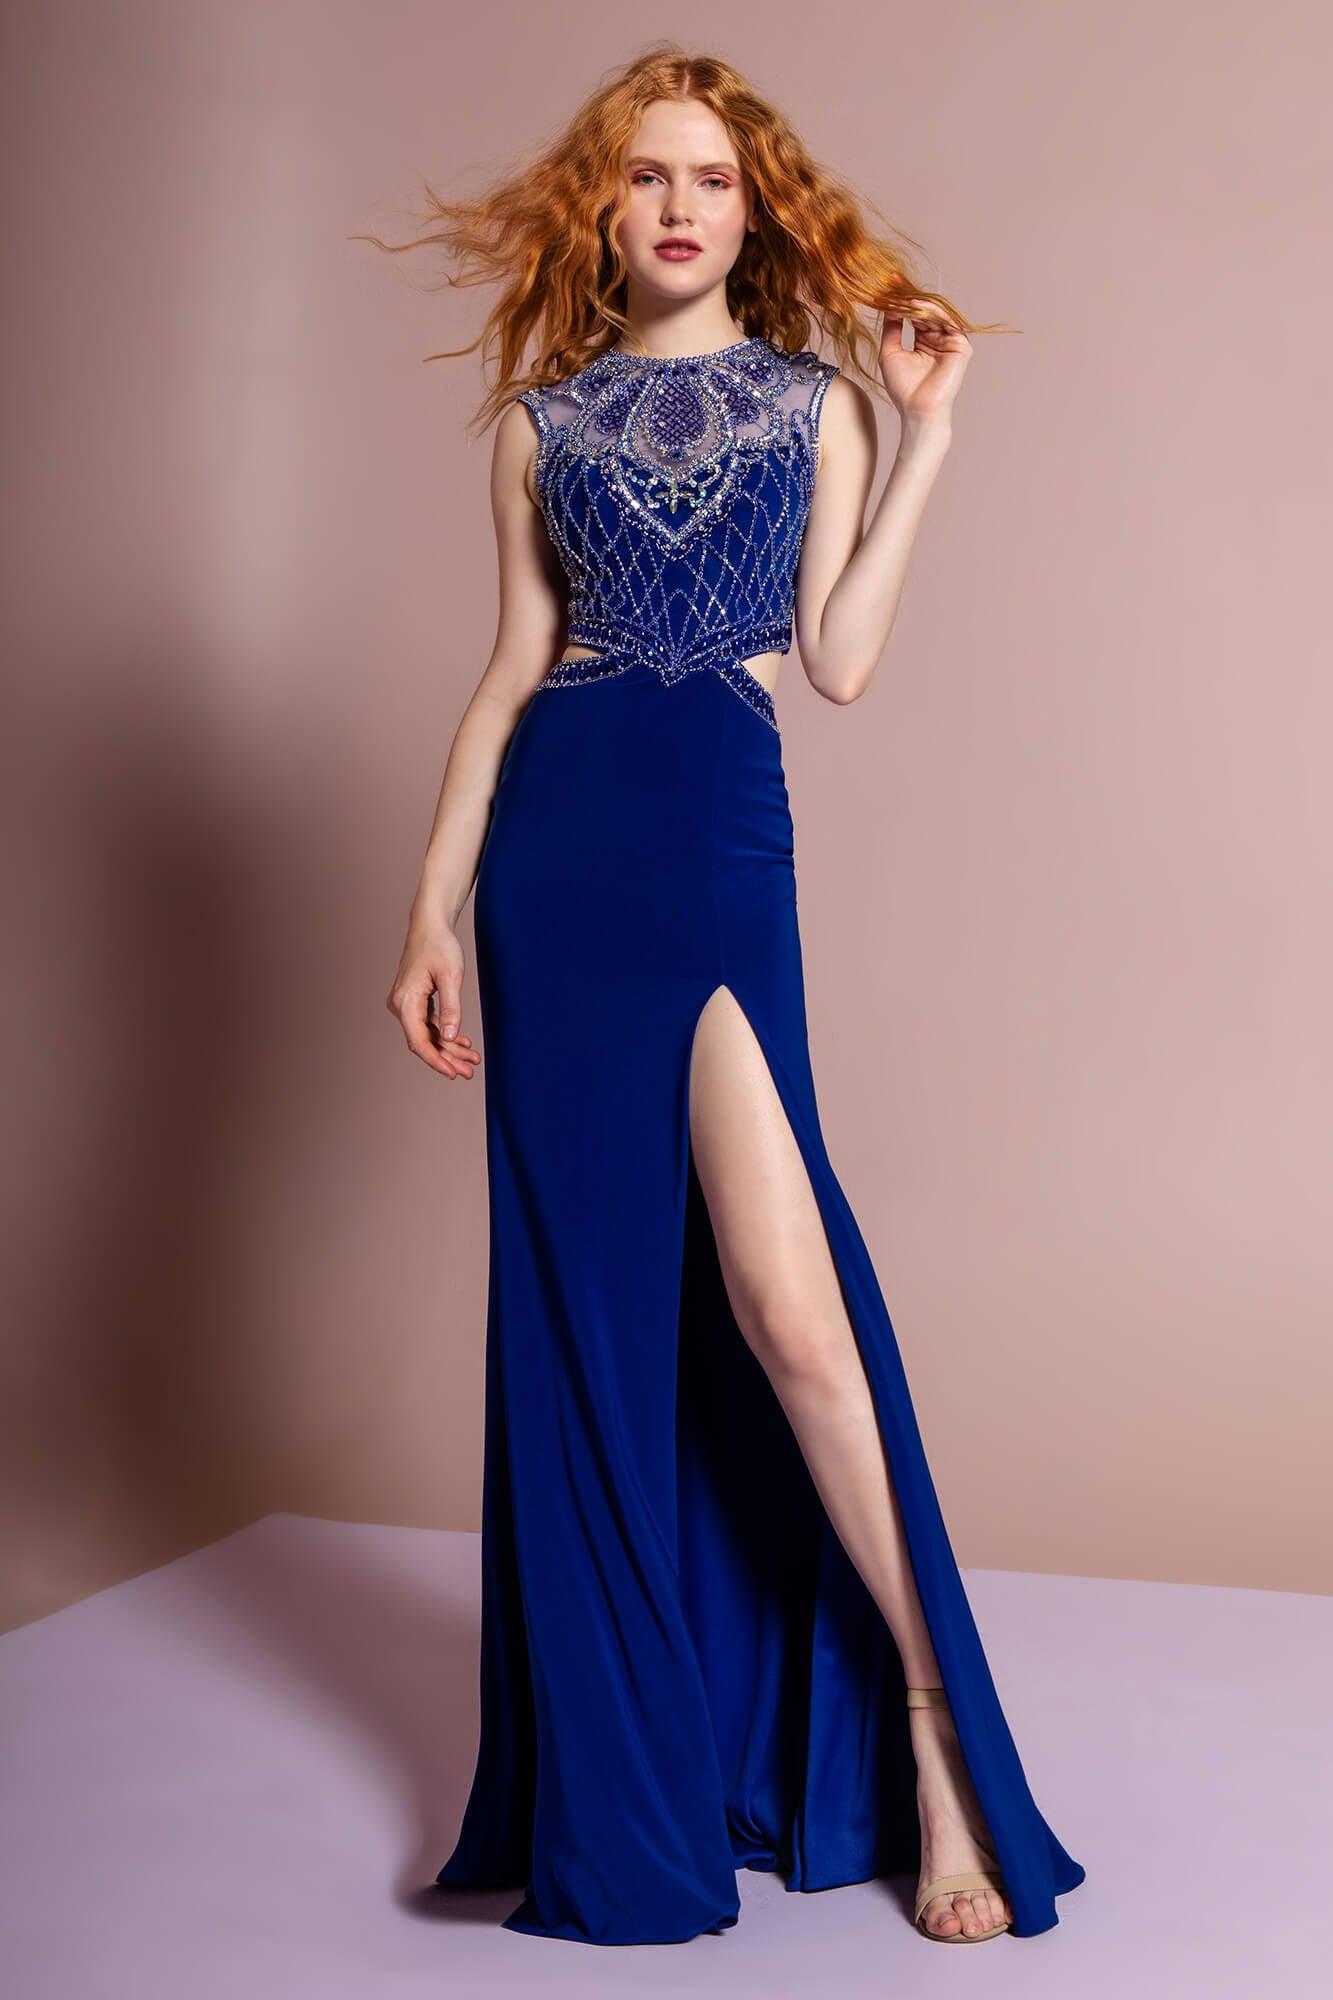 Long Formal Prom Dress Evening Gown with Side Slit - The Dress Outlet Elizabeth K